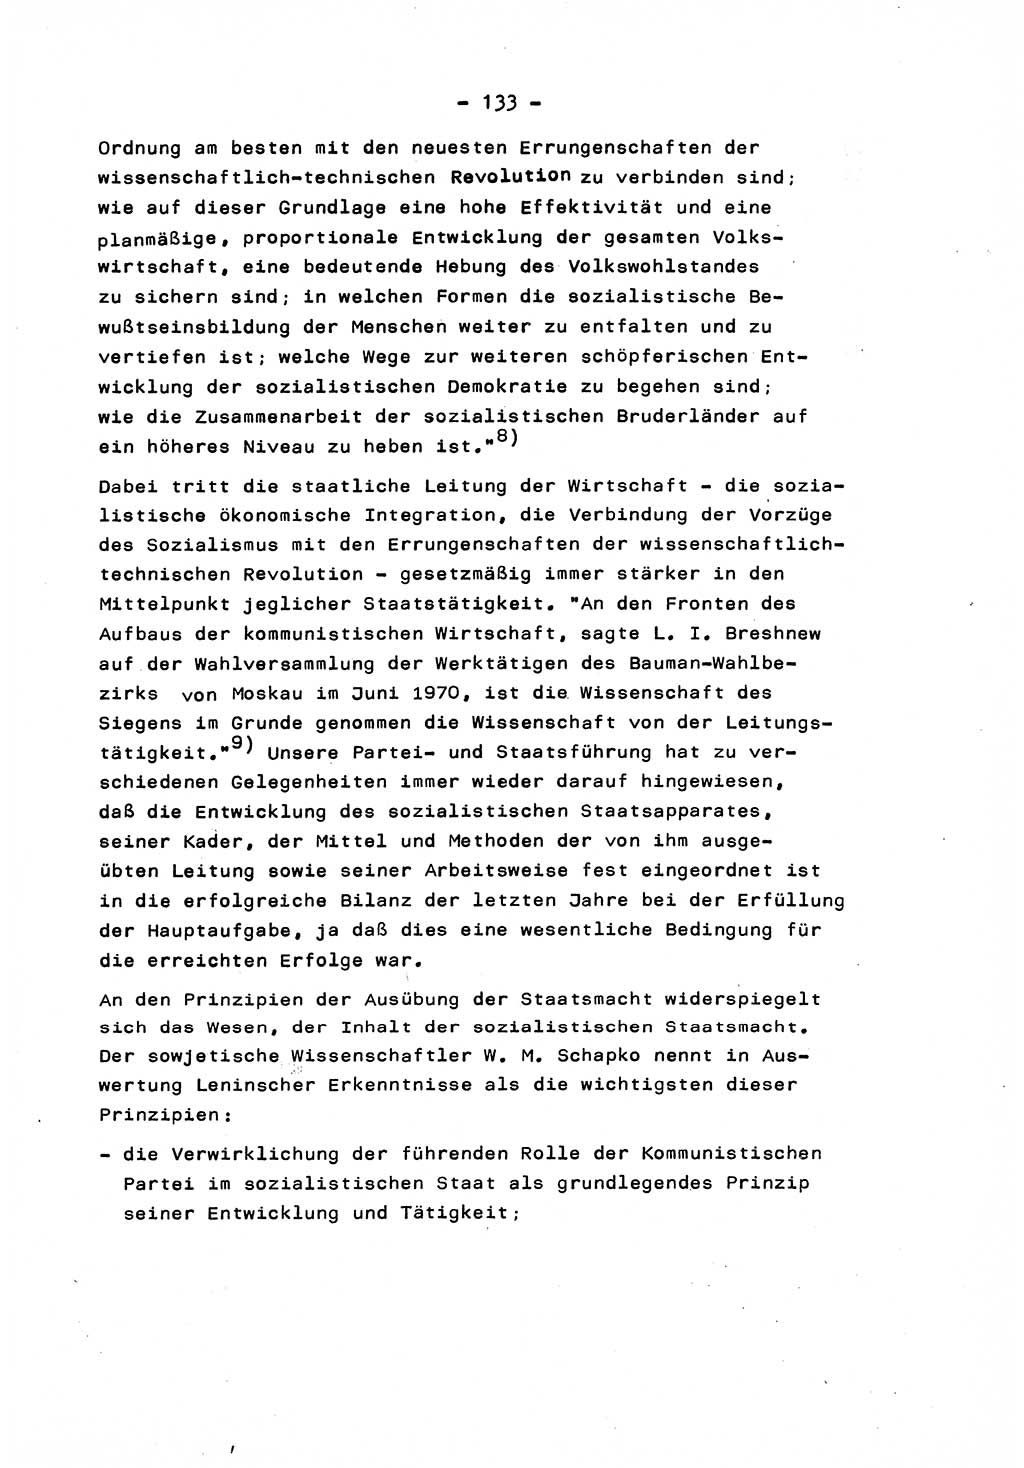 Marxistisch-leninistische Staats- und Rechtstheorie [Deutsche Demokratische Republik (DDR)] 1975, Seite 133 (ML St.-R.-Th. DDR 1975, S. 133)